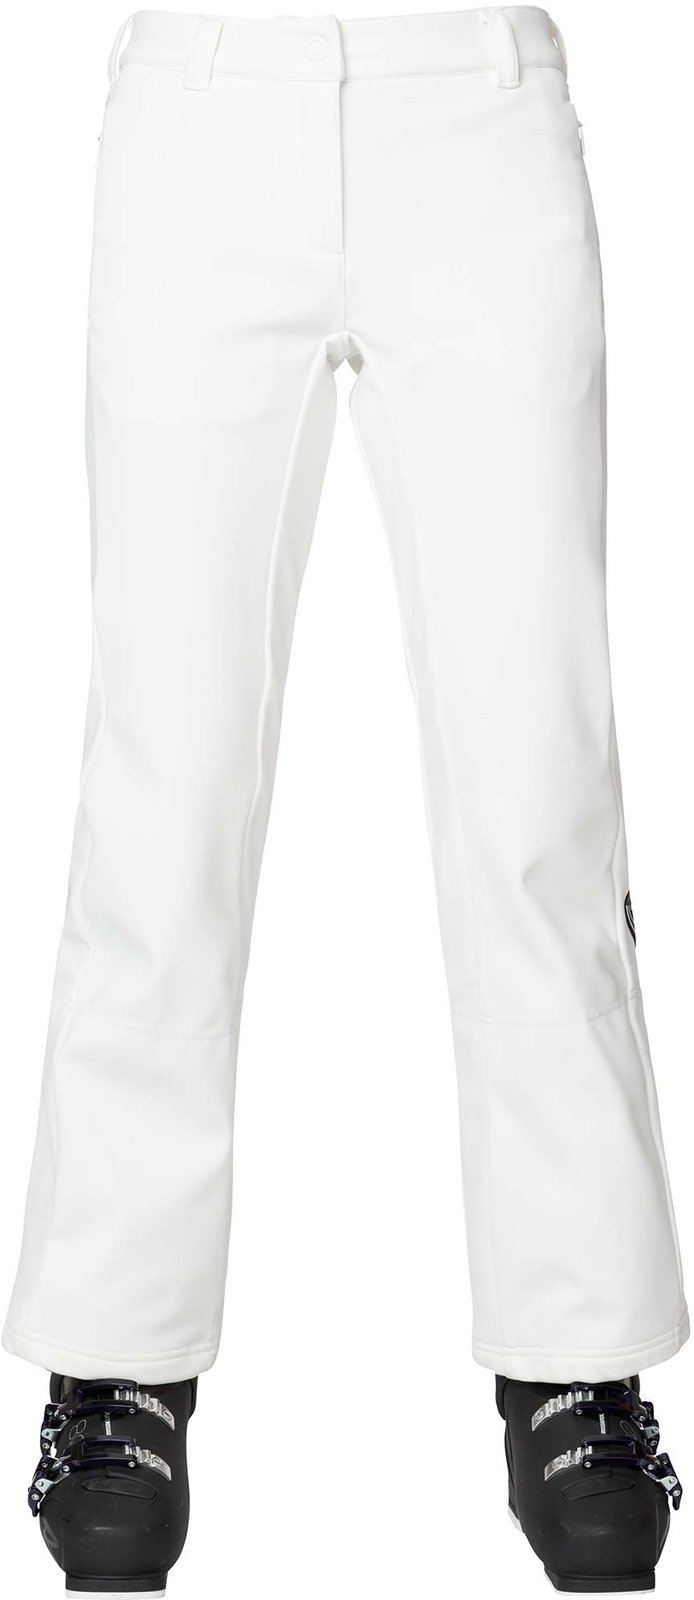 Smučarske hlače Rossignol Softshell White S